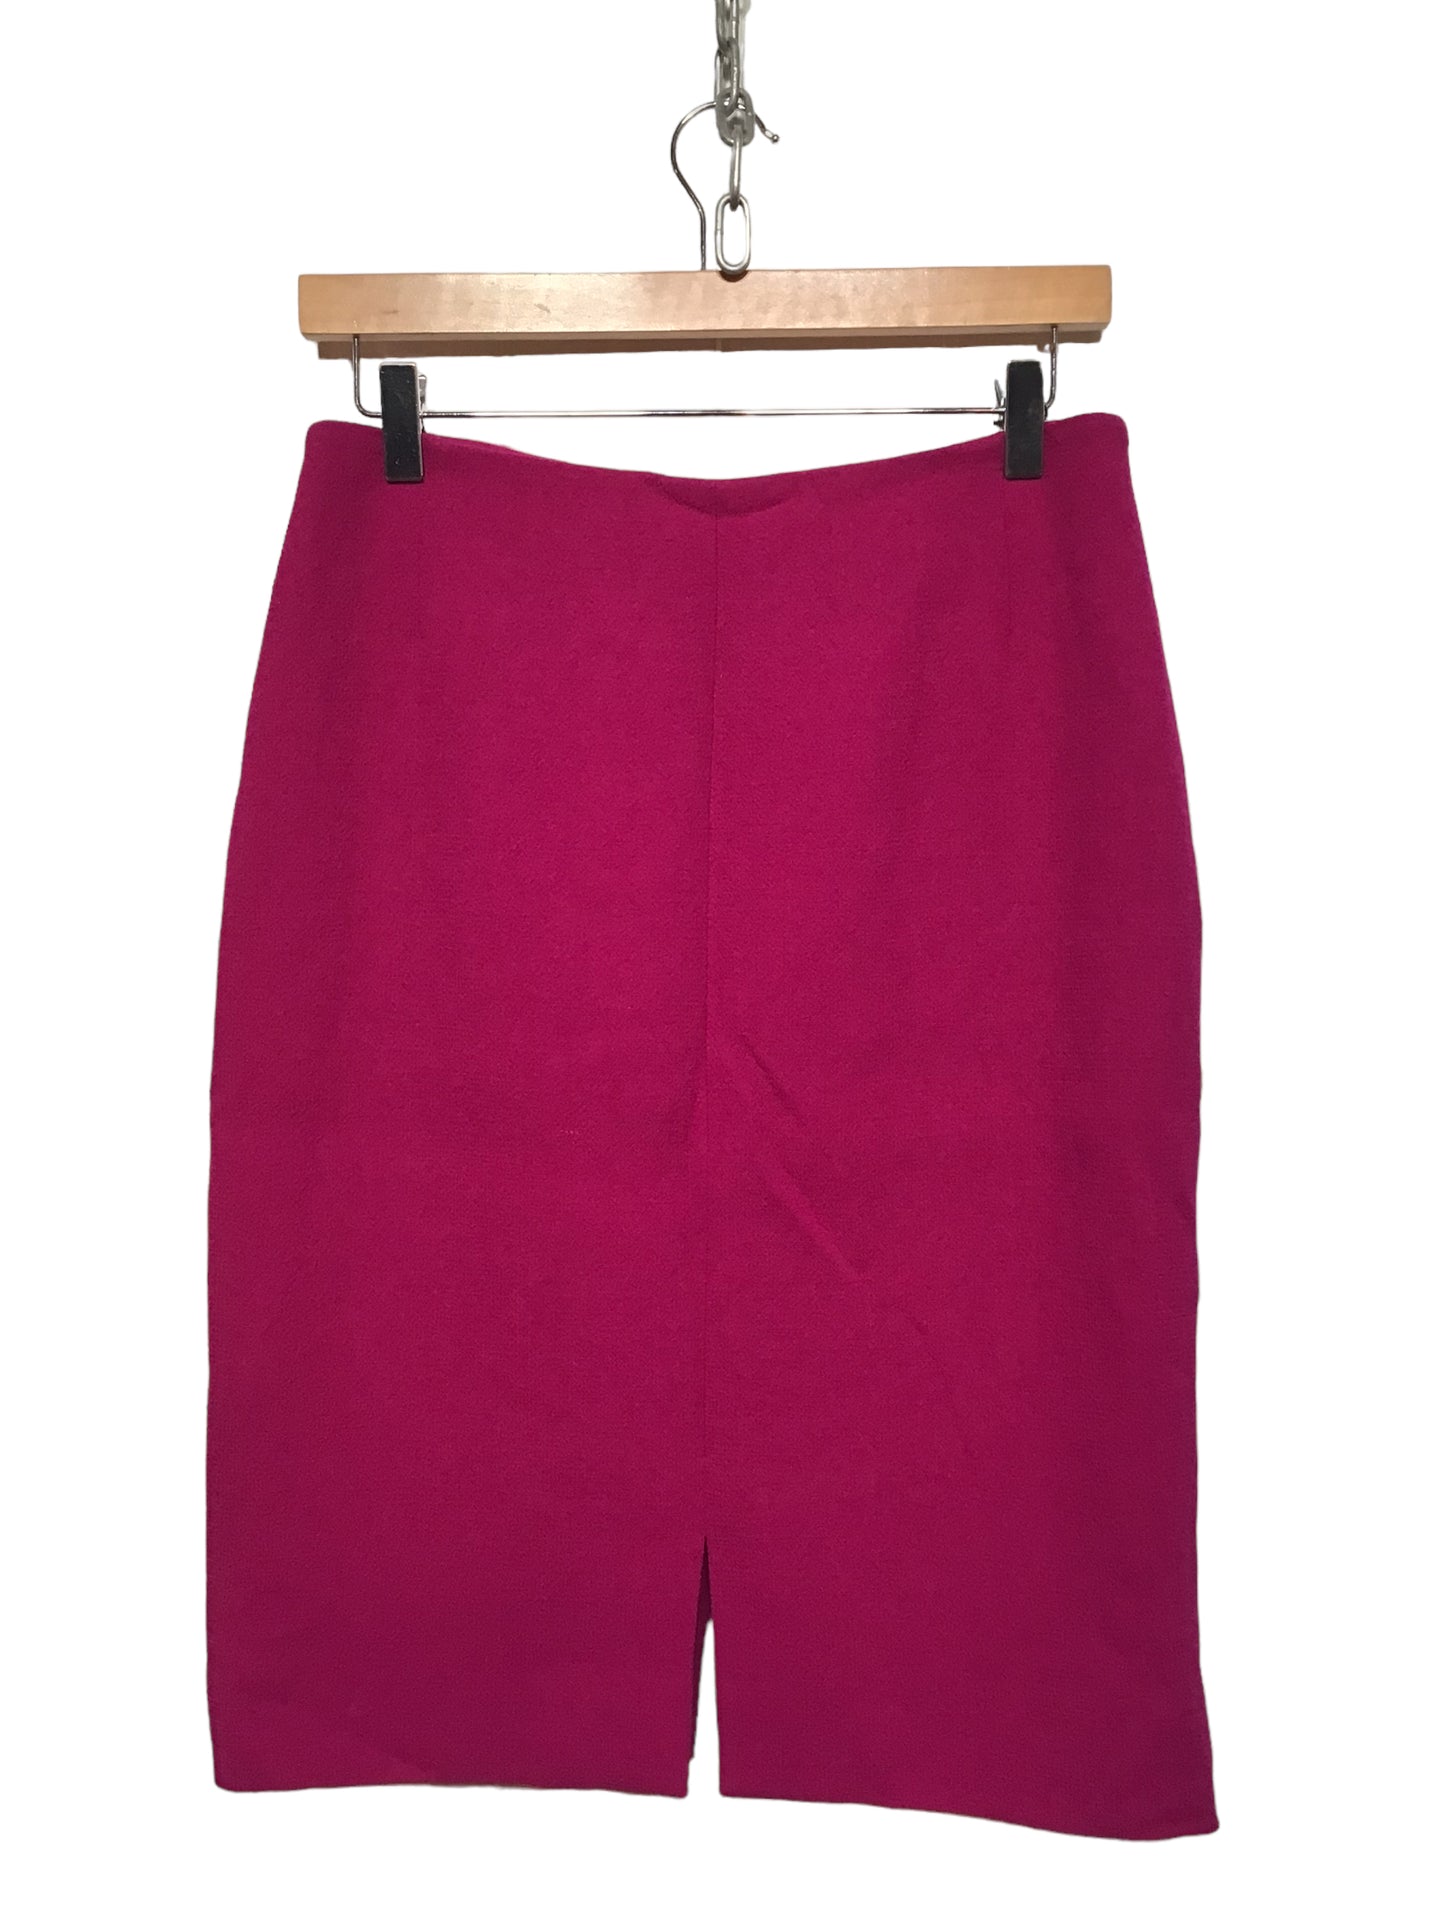 Volditevere Skirt (Size M)